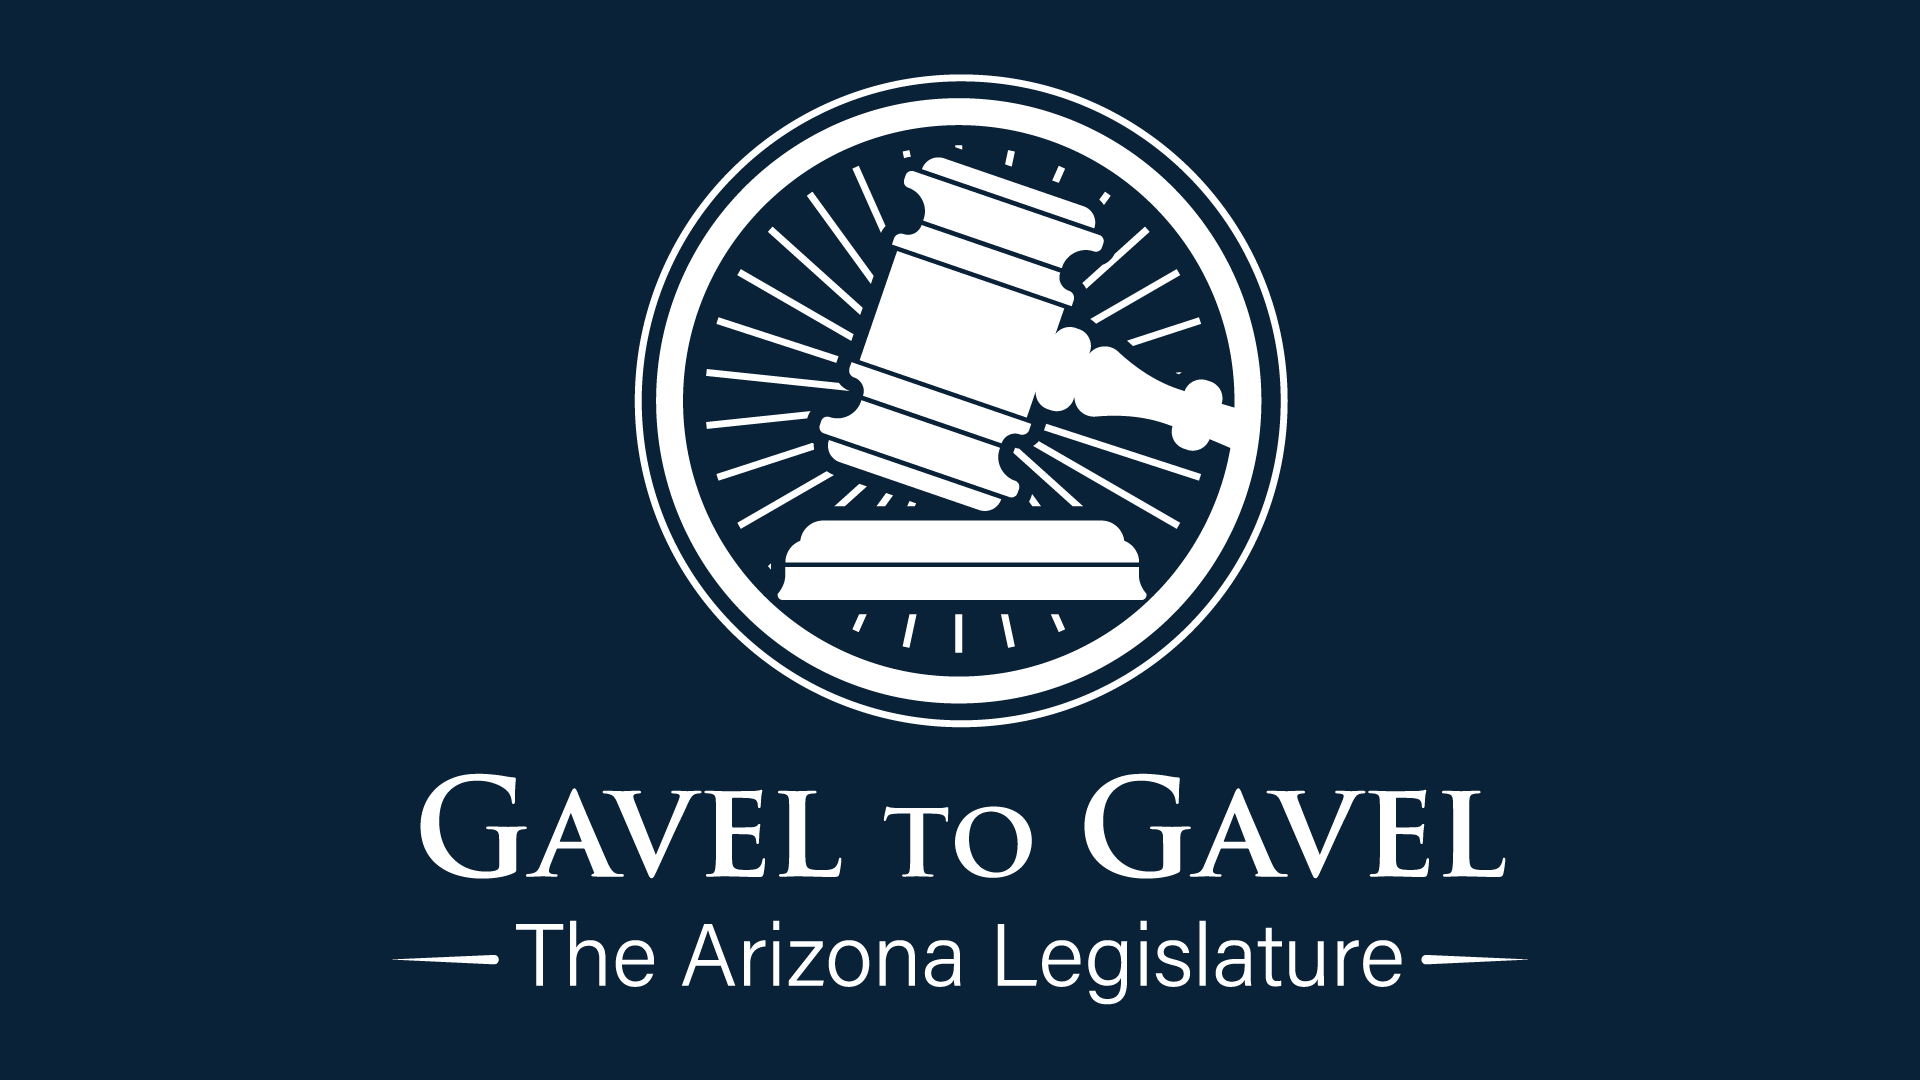 Gavel to Gavel: The Arizona Legislature